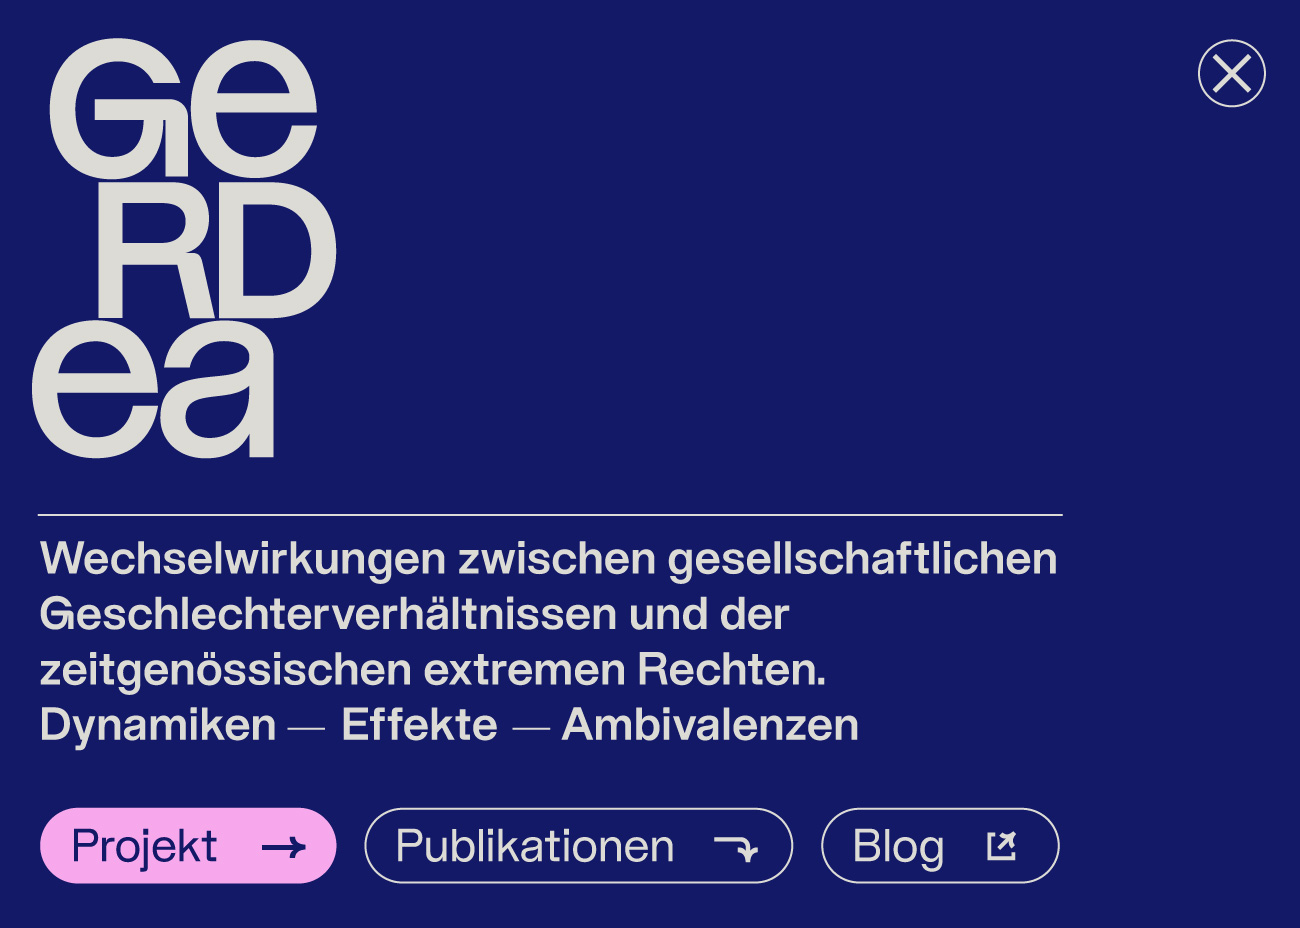 Elemente aus dem Gerdea-Designsystem: Das Logo, Die Schrift, die Buttons und Icons in grau auf dunkelblauem Grund.